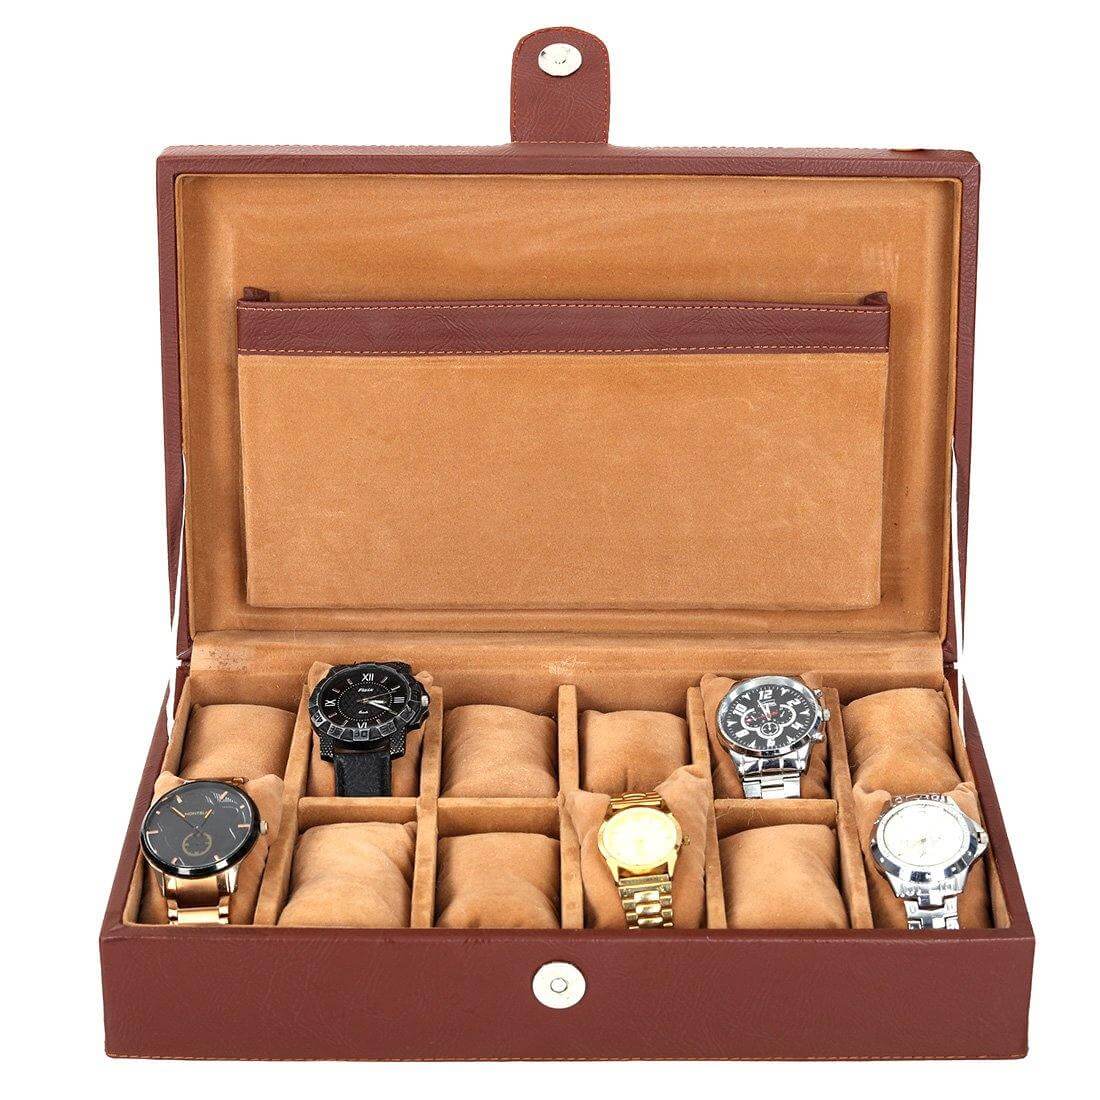 12 Slots Luxury Watch Box Organizer with Plain PU Leather Finish